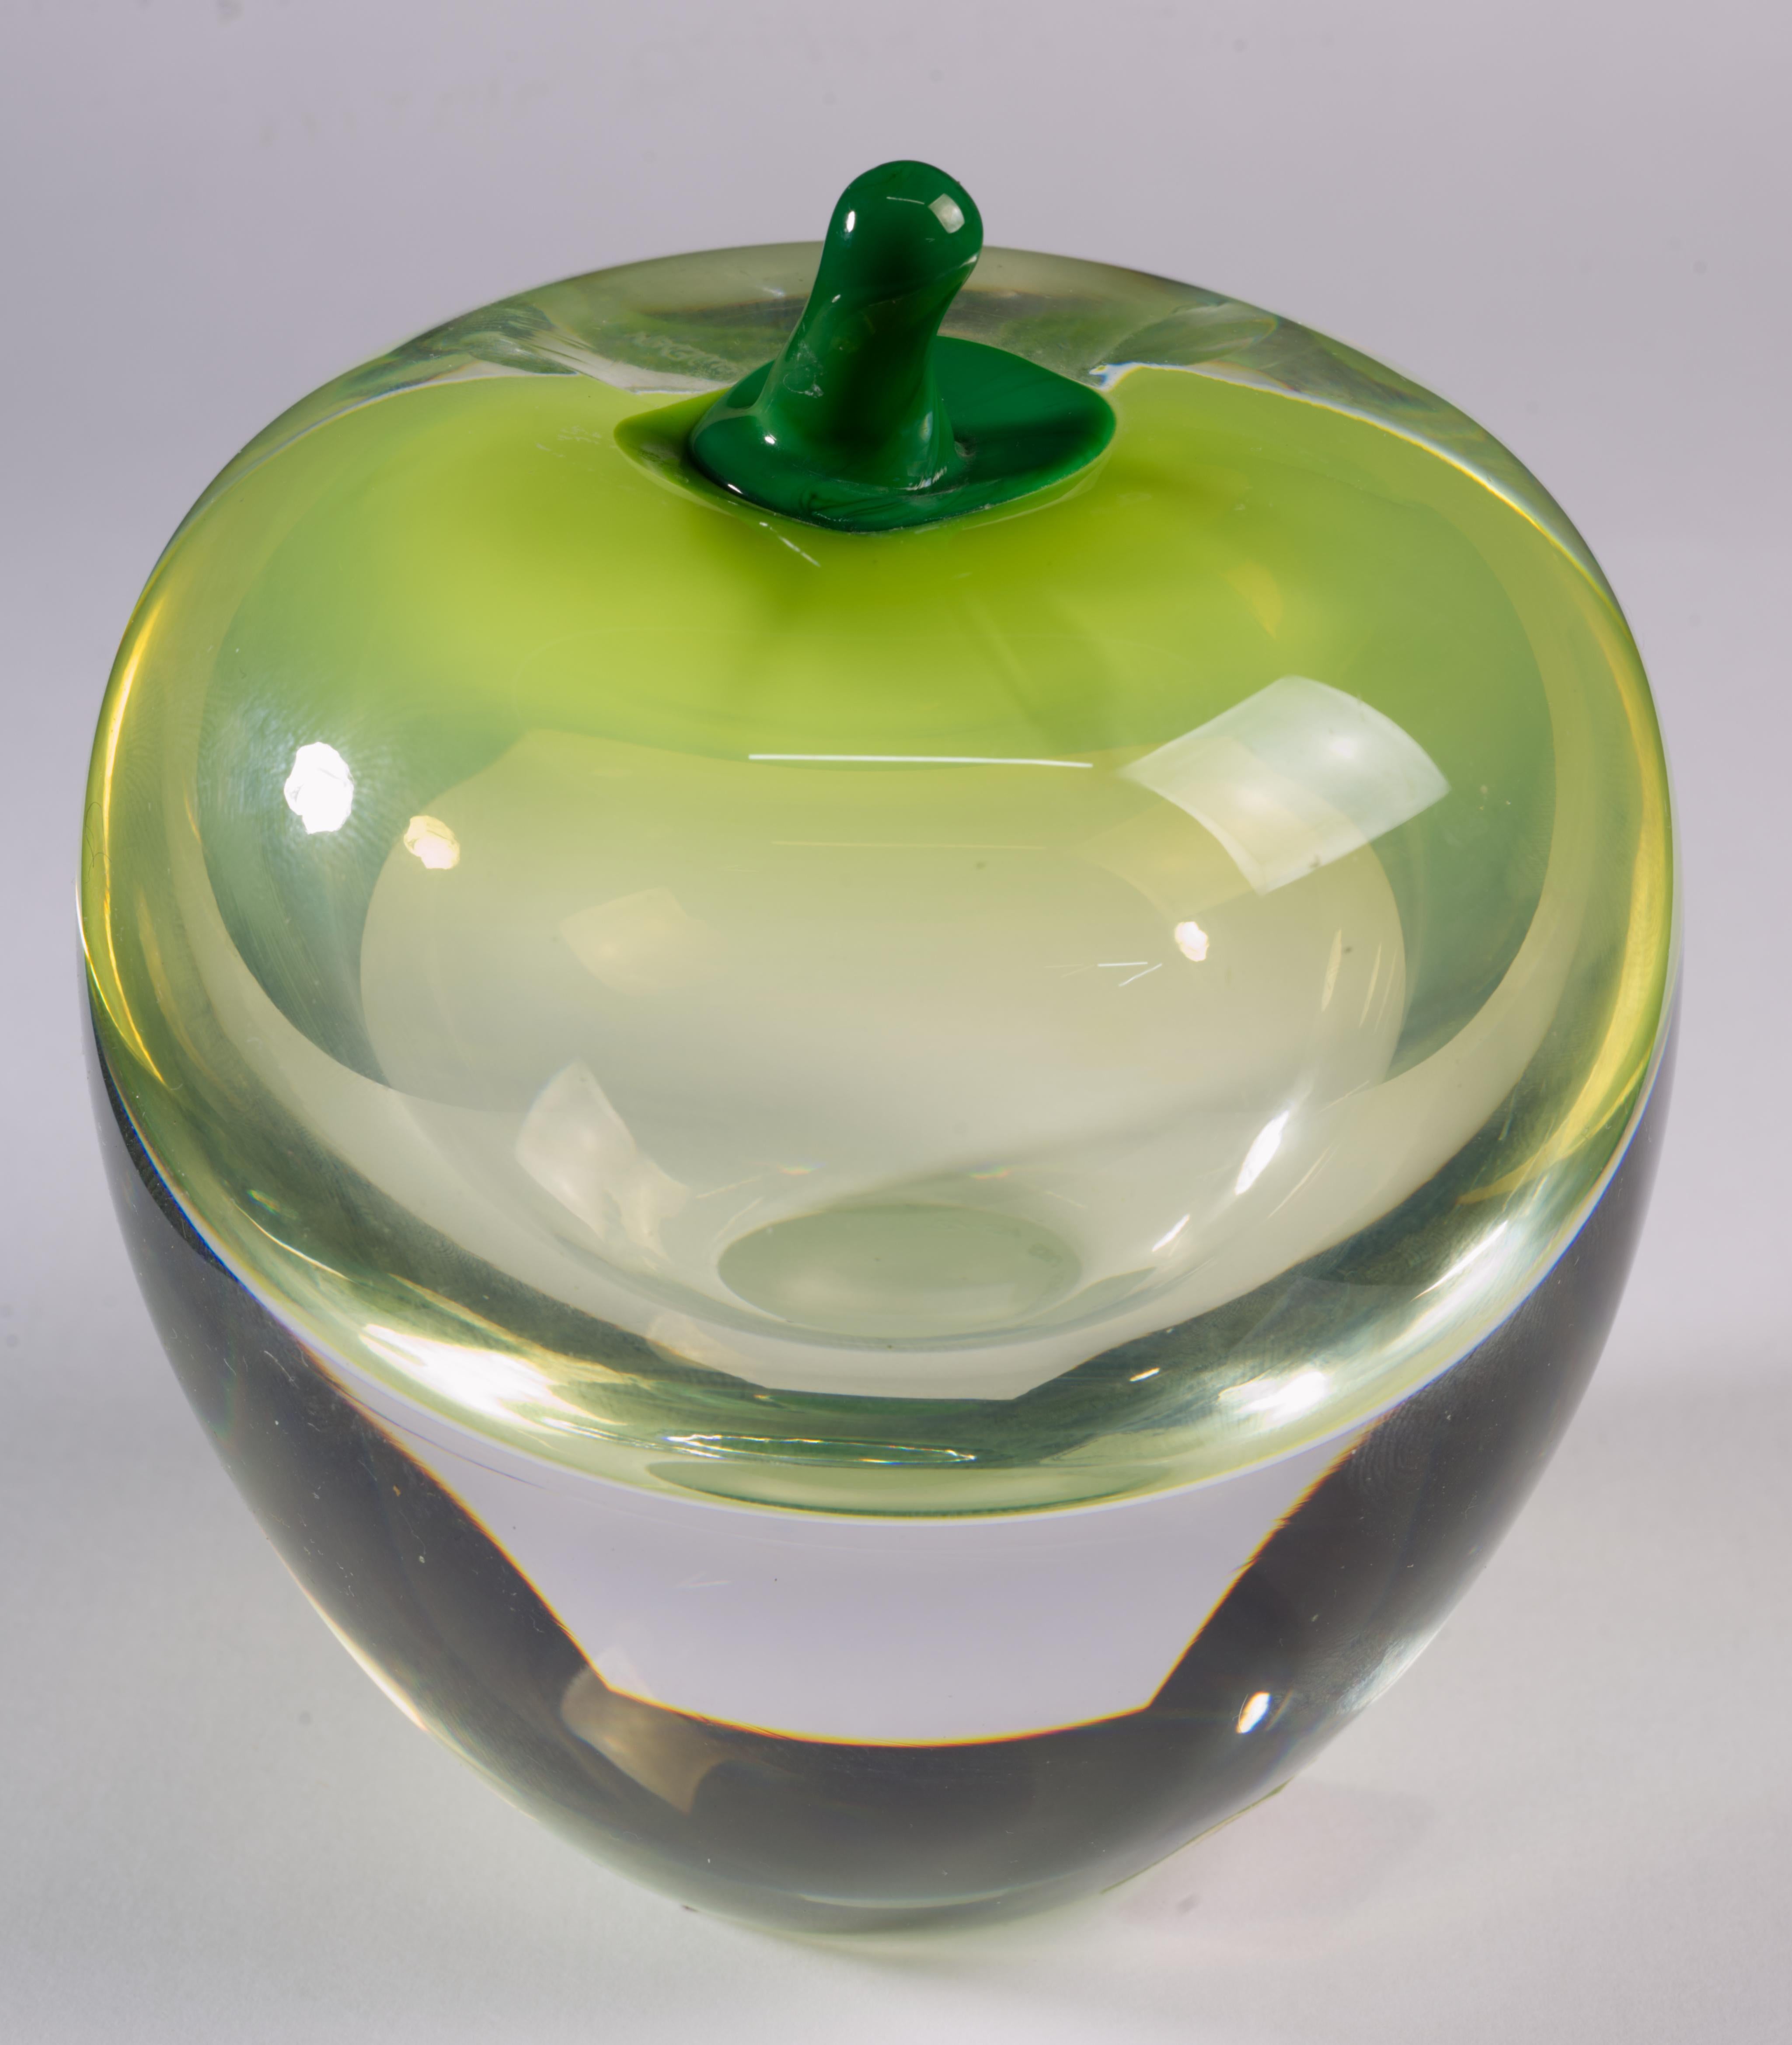  Die seltene Apfelskulptur oder der Briefbeschwerer von Studio Åhus wurde 1988 in Schweden in der aus Murano, Italien, stammenden Sommerso-Technik handgefertigt. Der Kern aus rauchig-hellgrünem Glas mit ombrierten Farbverläufen ist in das Innere der